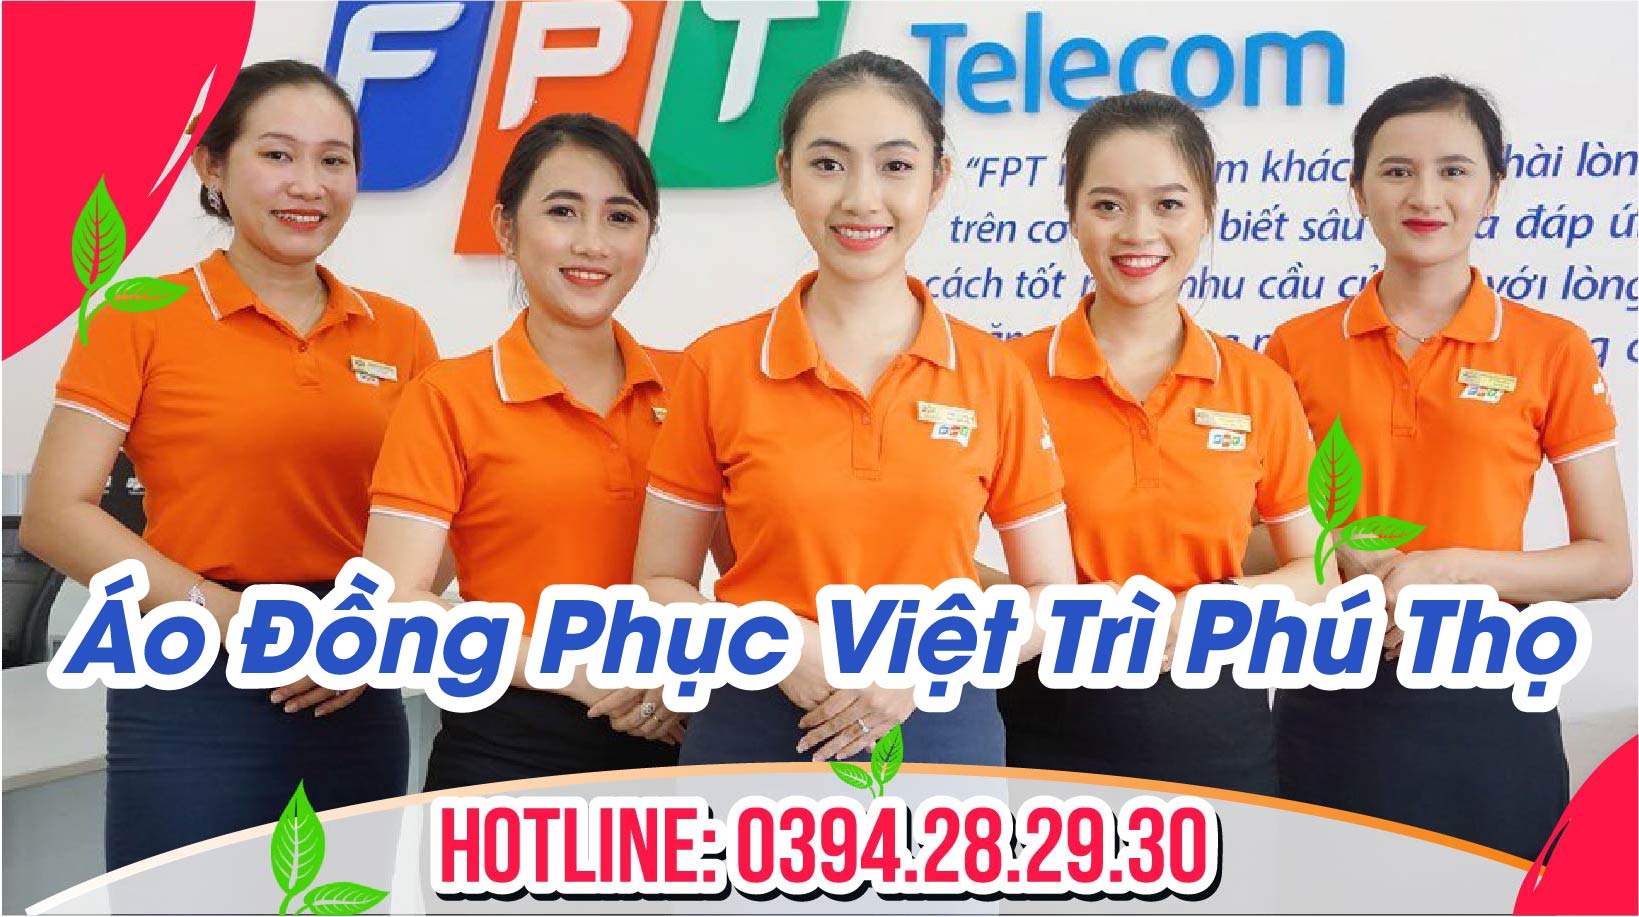 Áo Đồng Phục Việt Trì Phú Thọ - TRUNG ANH MEDIA